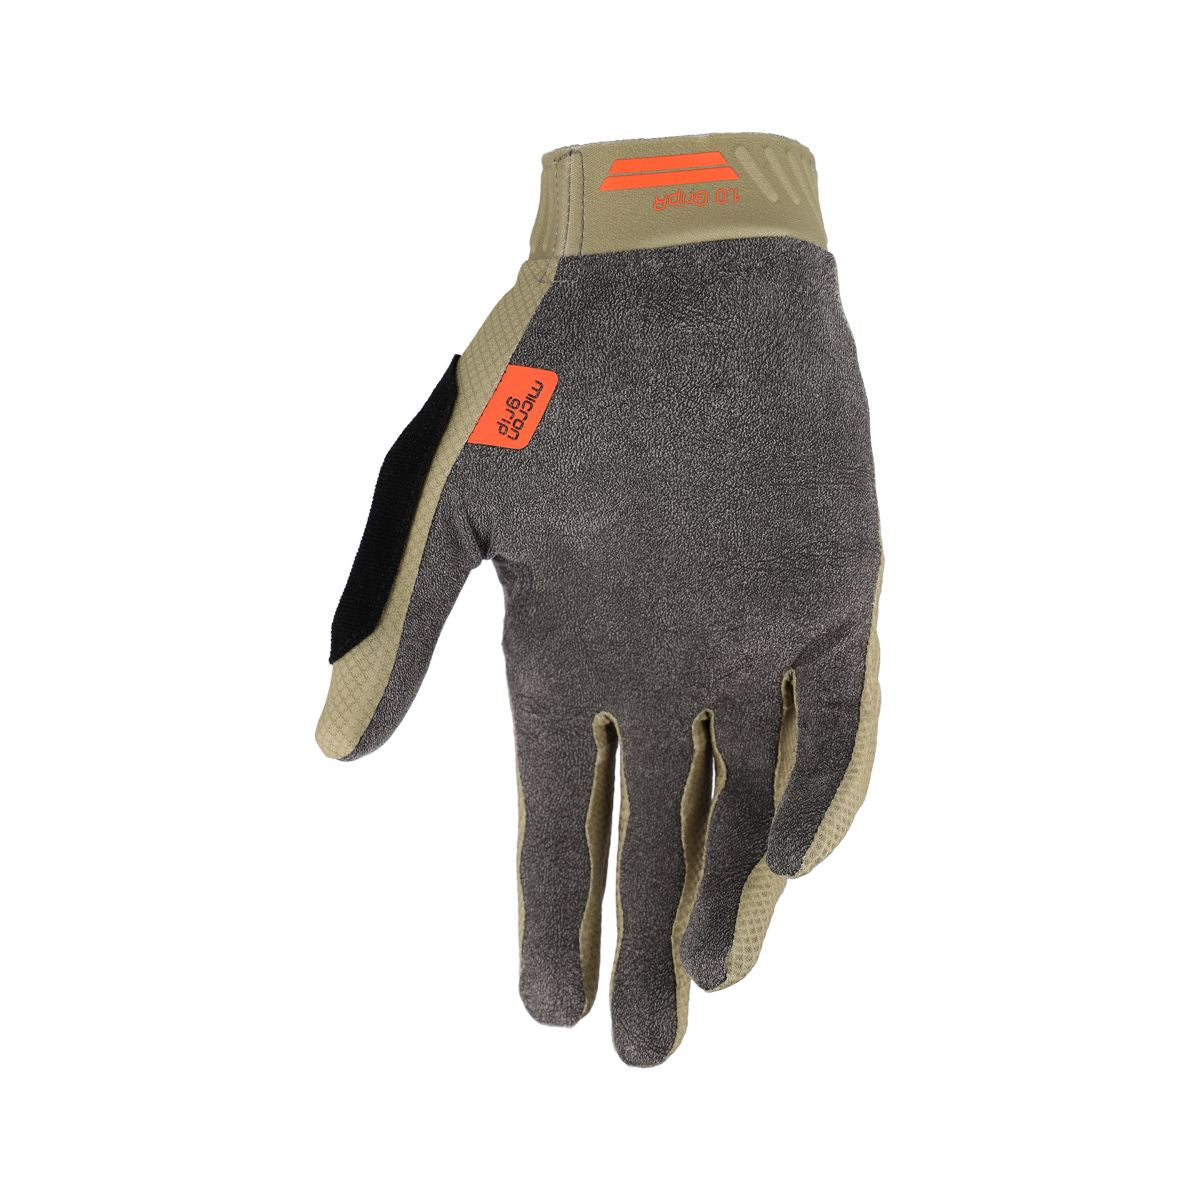 Leatt Protection Glove Mtb 1.0 Gripr Dune S in Dune